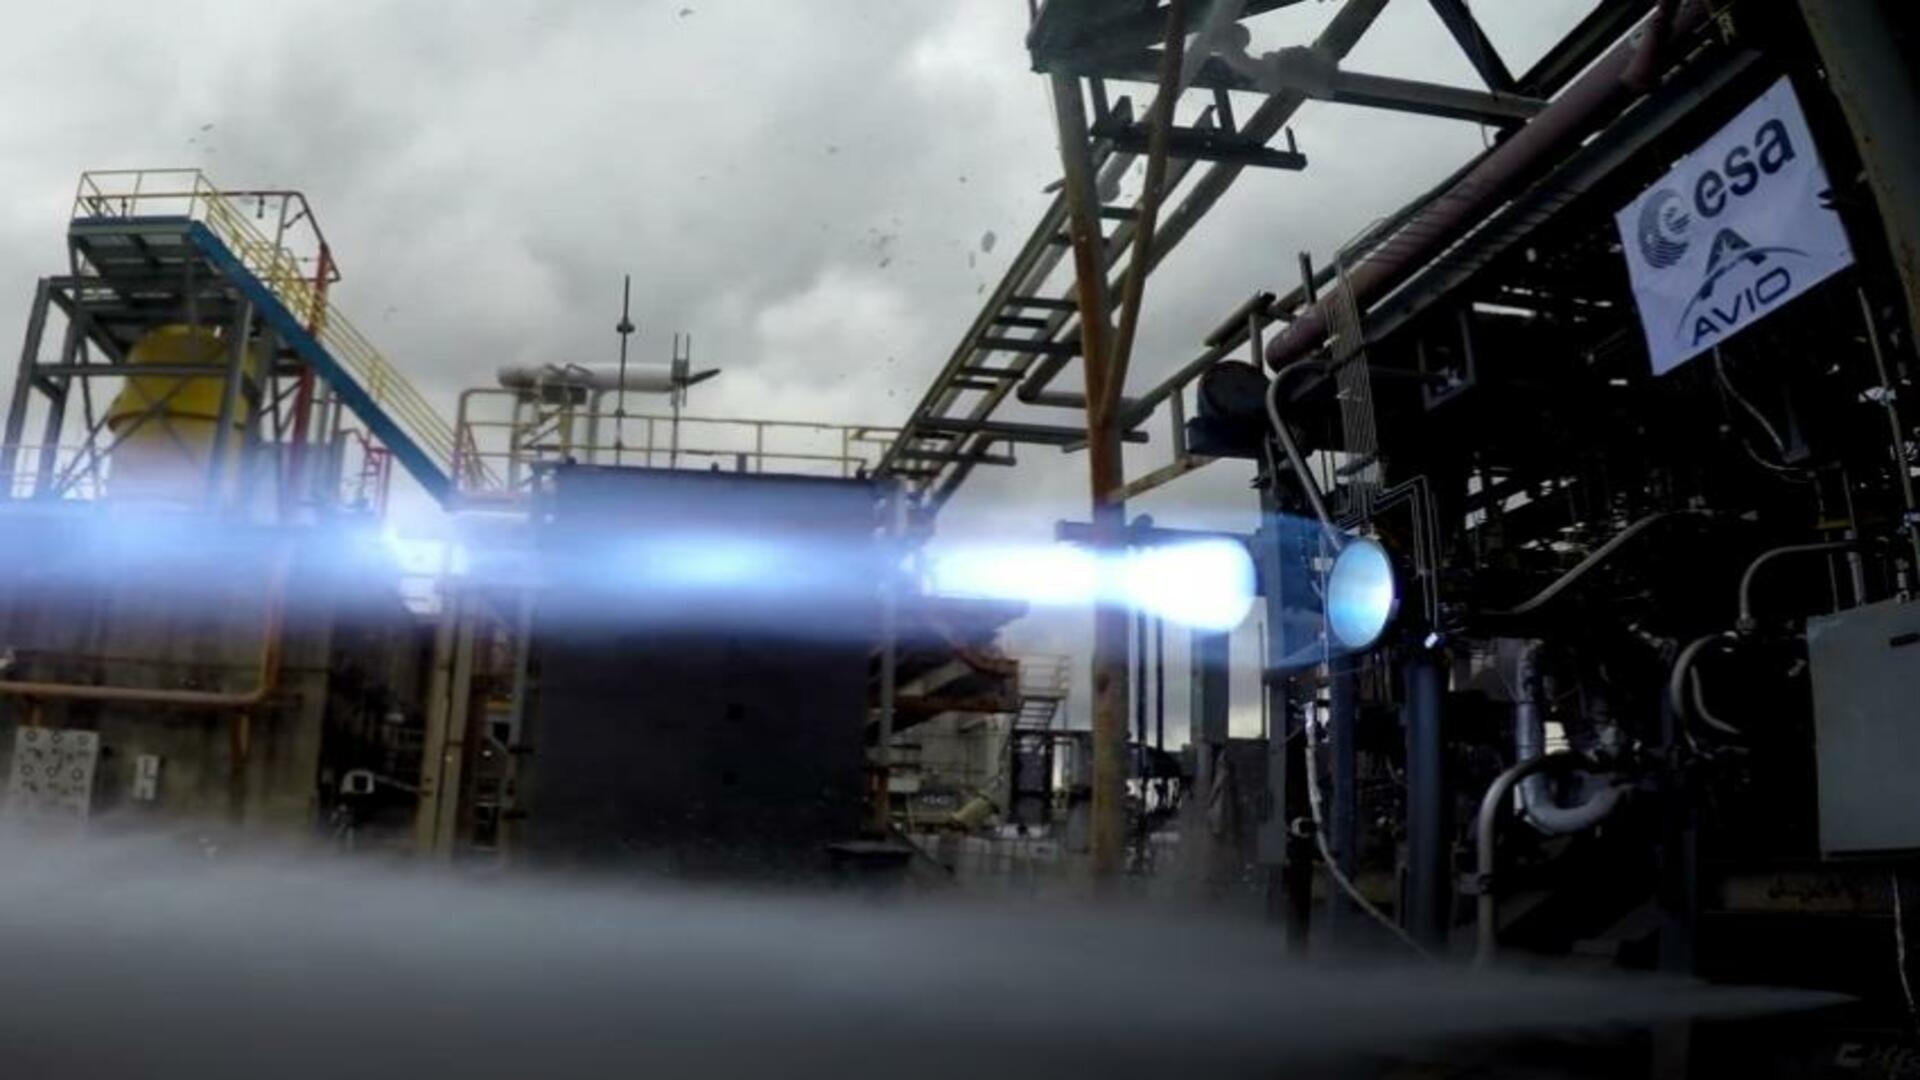 ASI - Testata la camera di combustione del futuro lanciatore Vega E